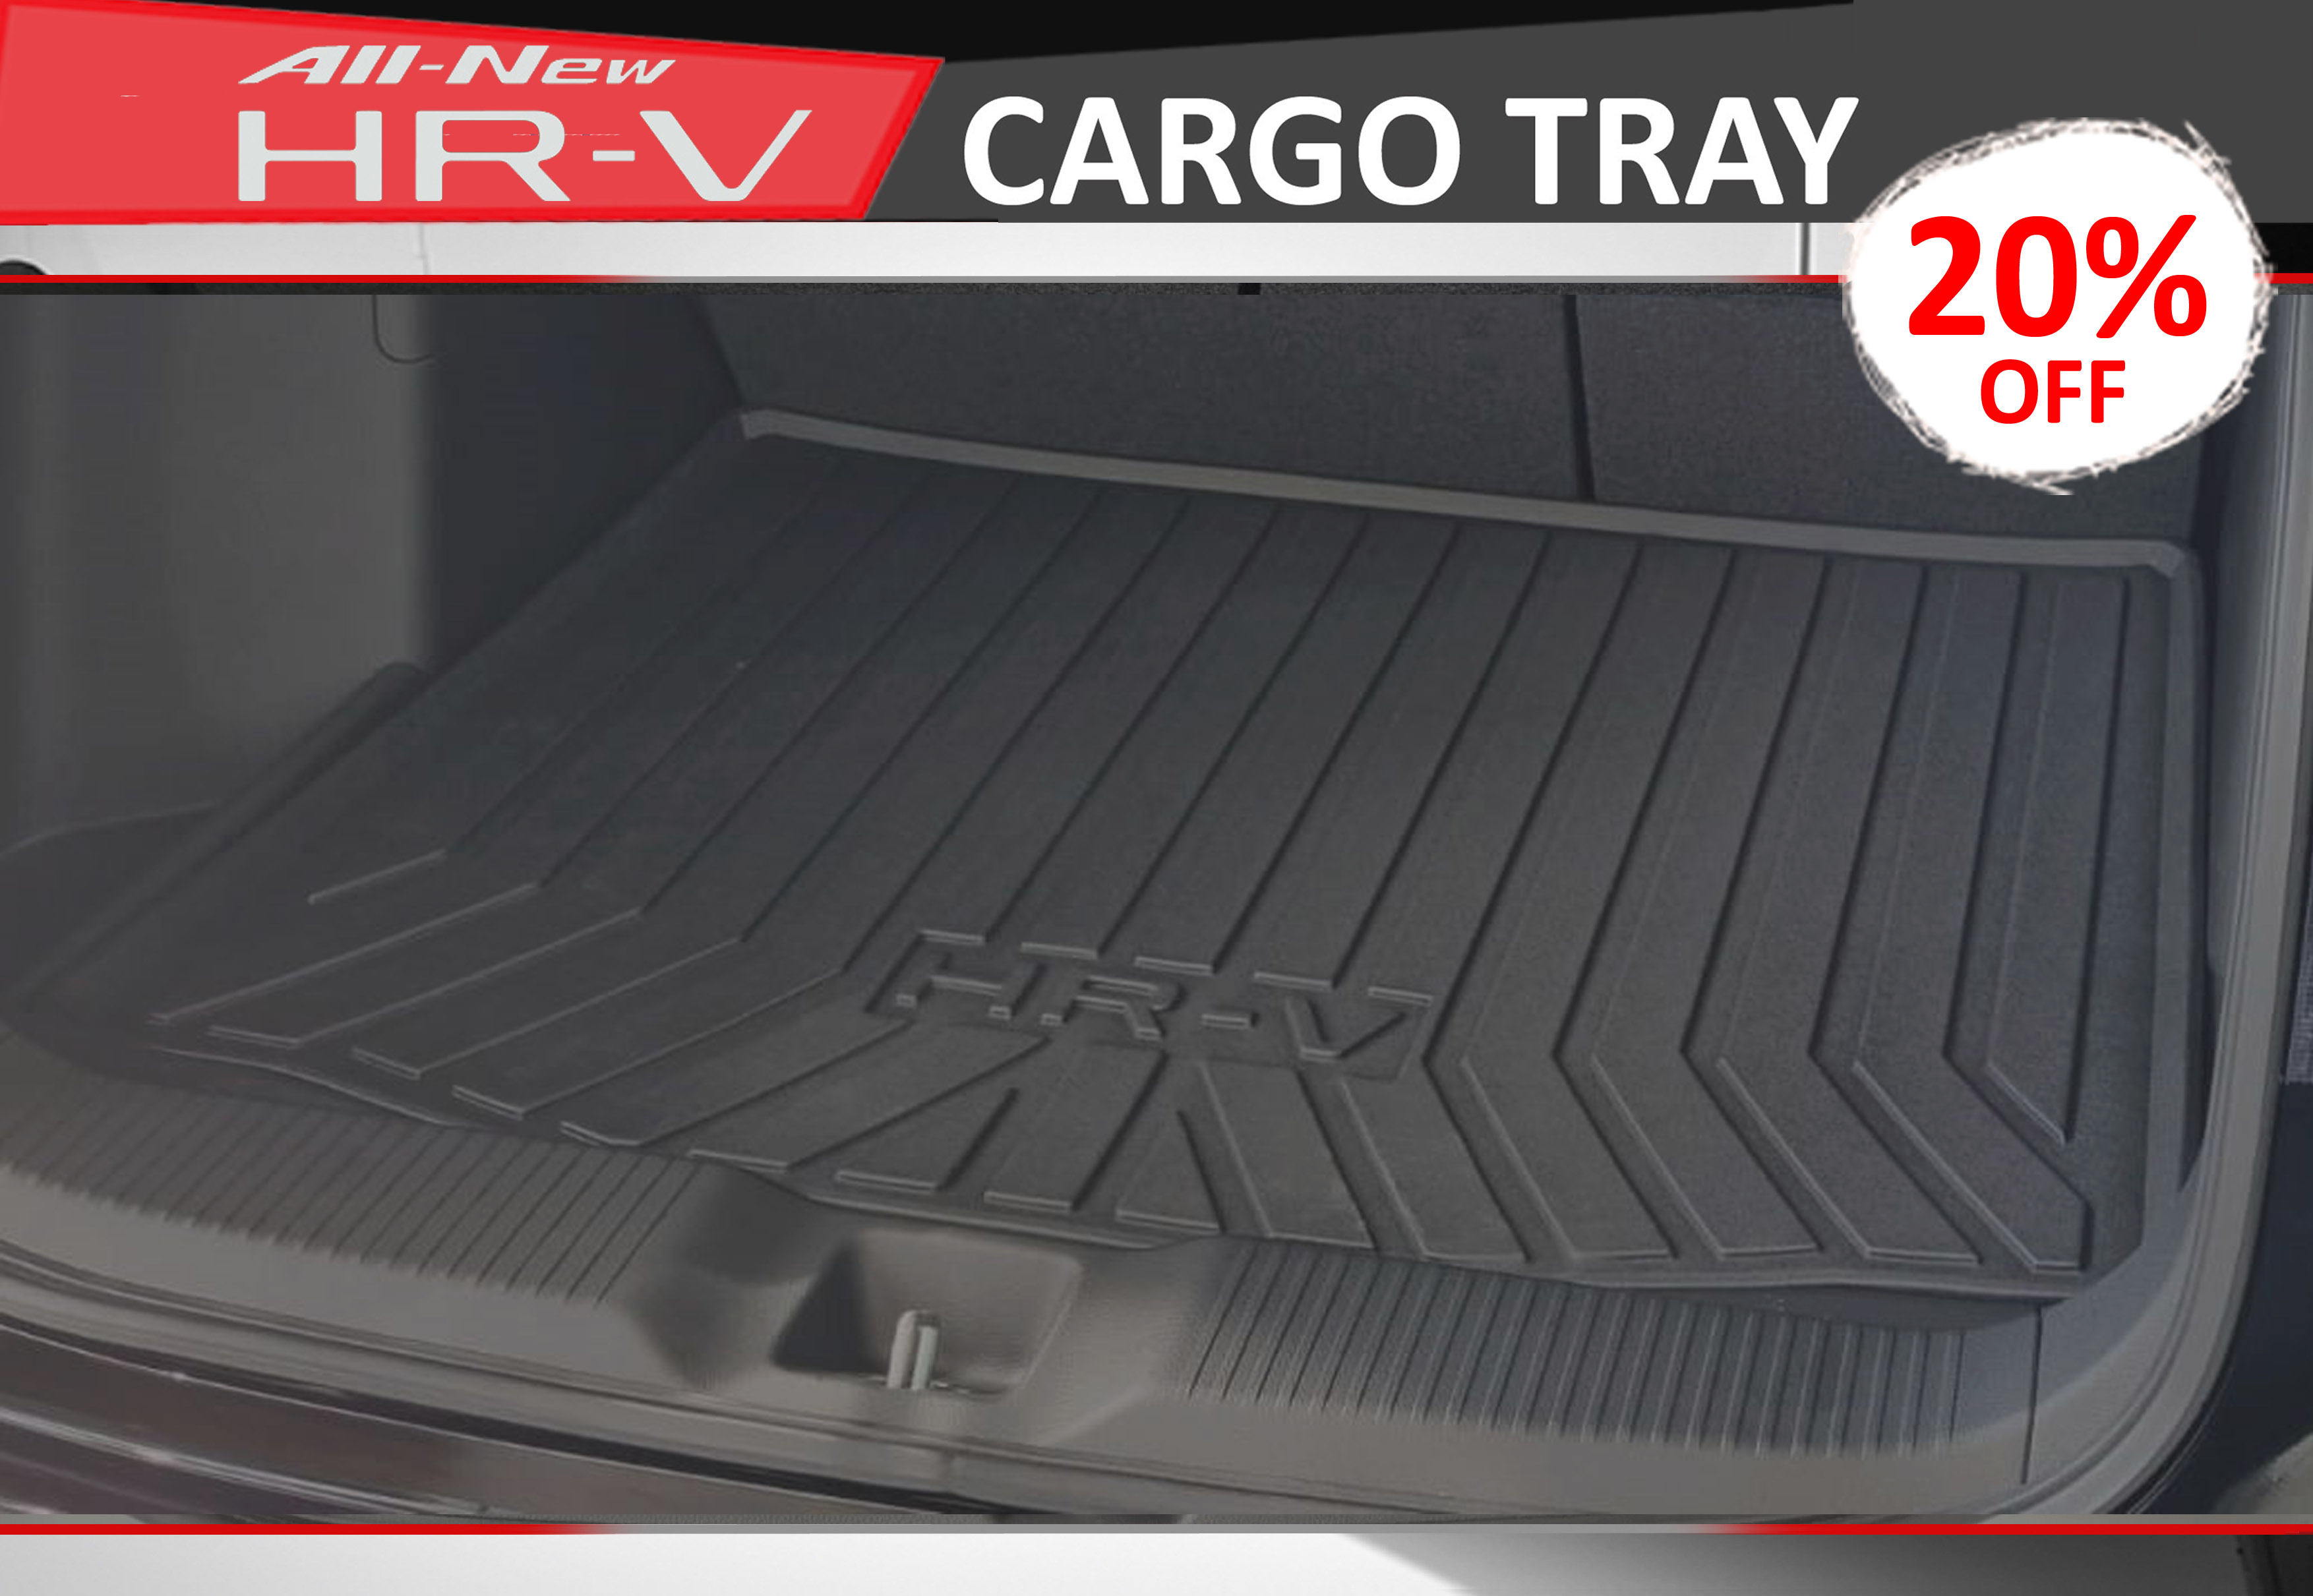 HR-V_Cargo_Tray Honda - Kah Motor - All New HR-V Cargo Tray